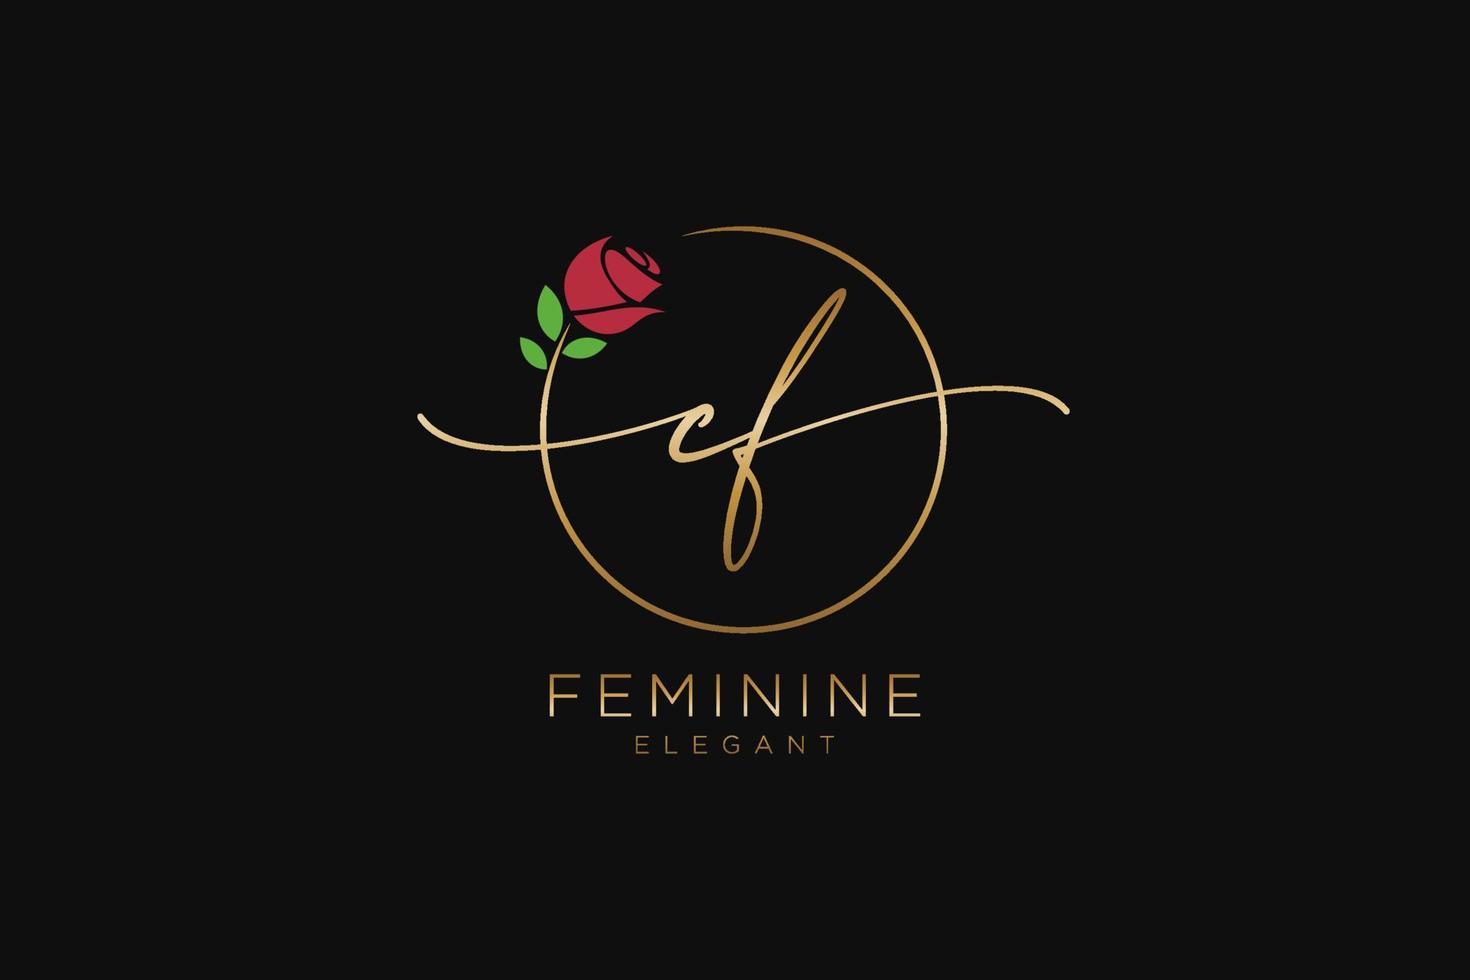 monogramme de beauté du logo féminin initial cf et design élégant du logo, logo manuscrit de la signature initiale, mariage, mode, floral et botanique avec modèle créatif. vecteur